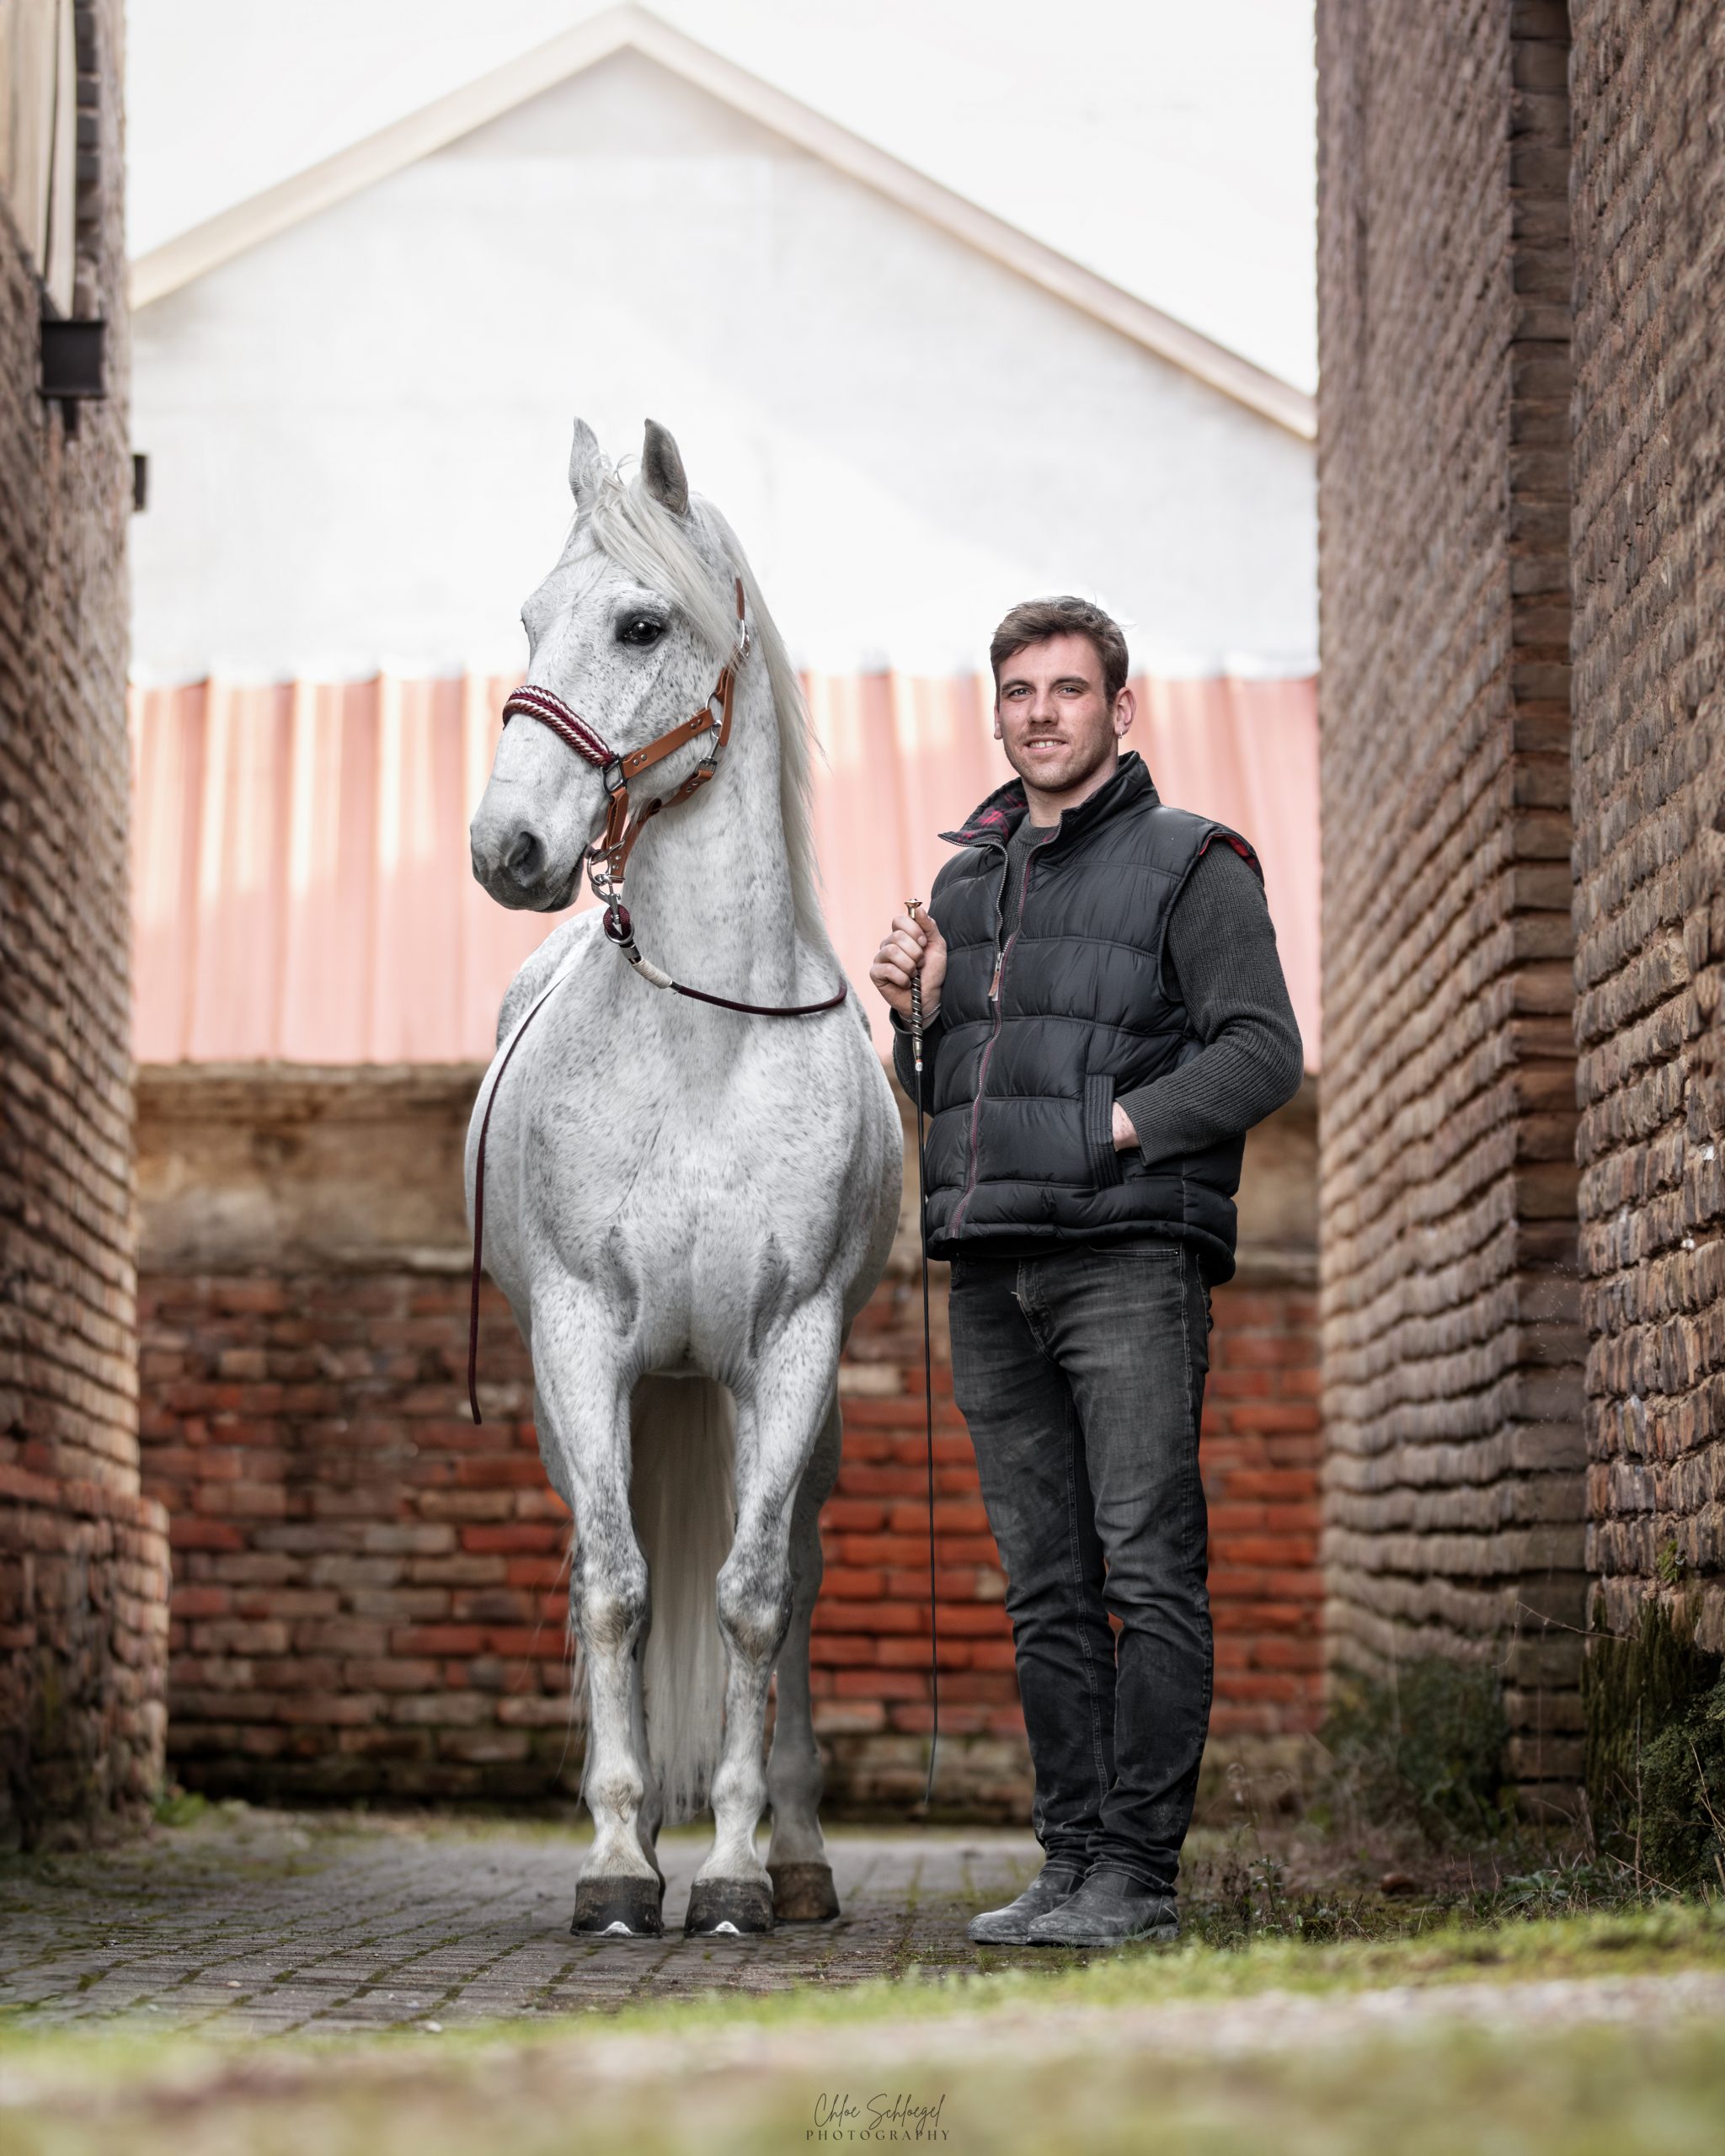 image équestre - Un homme se tenant debout dans une ruelle à coté d'un cheval blanc portant un licol en biothane marron fait main avec une muserolle tressée